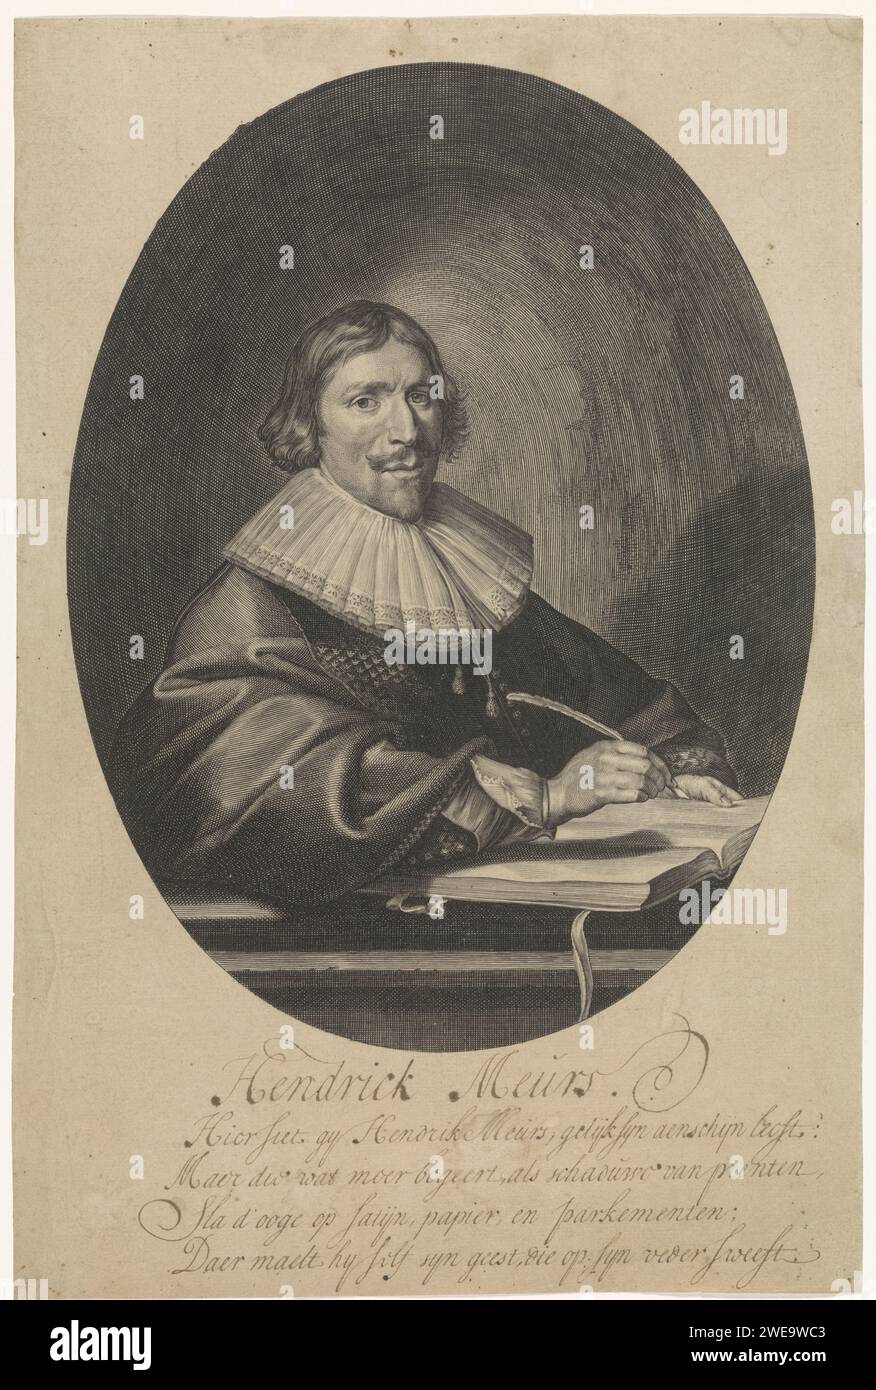 Porträt von Hendrik Meurs, Paulus Pontius, nach Pieter Codde, 1639er Druck Antwerpener Papierstich Stockfoto